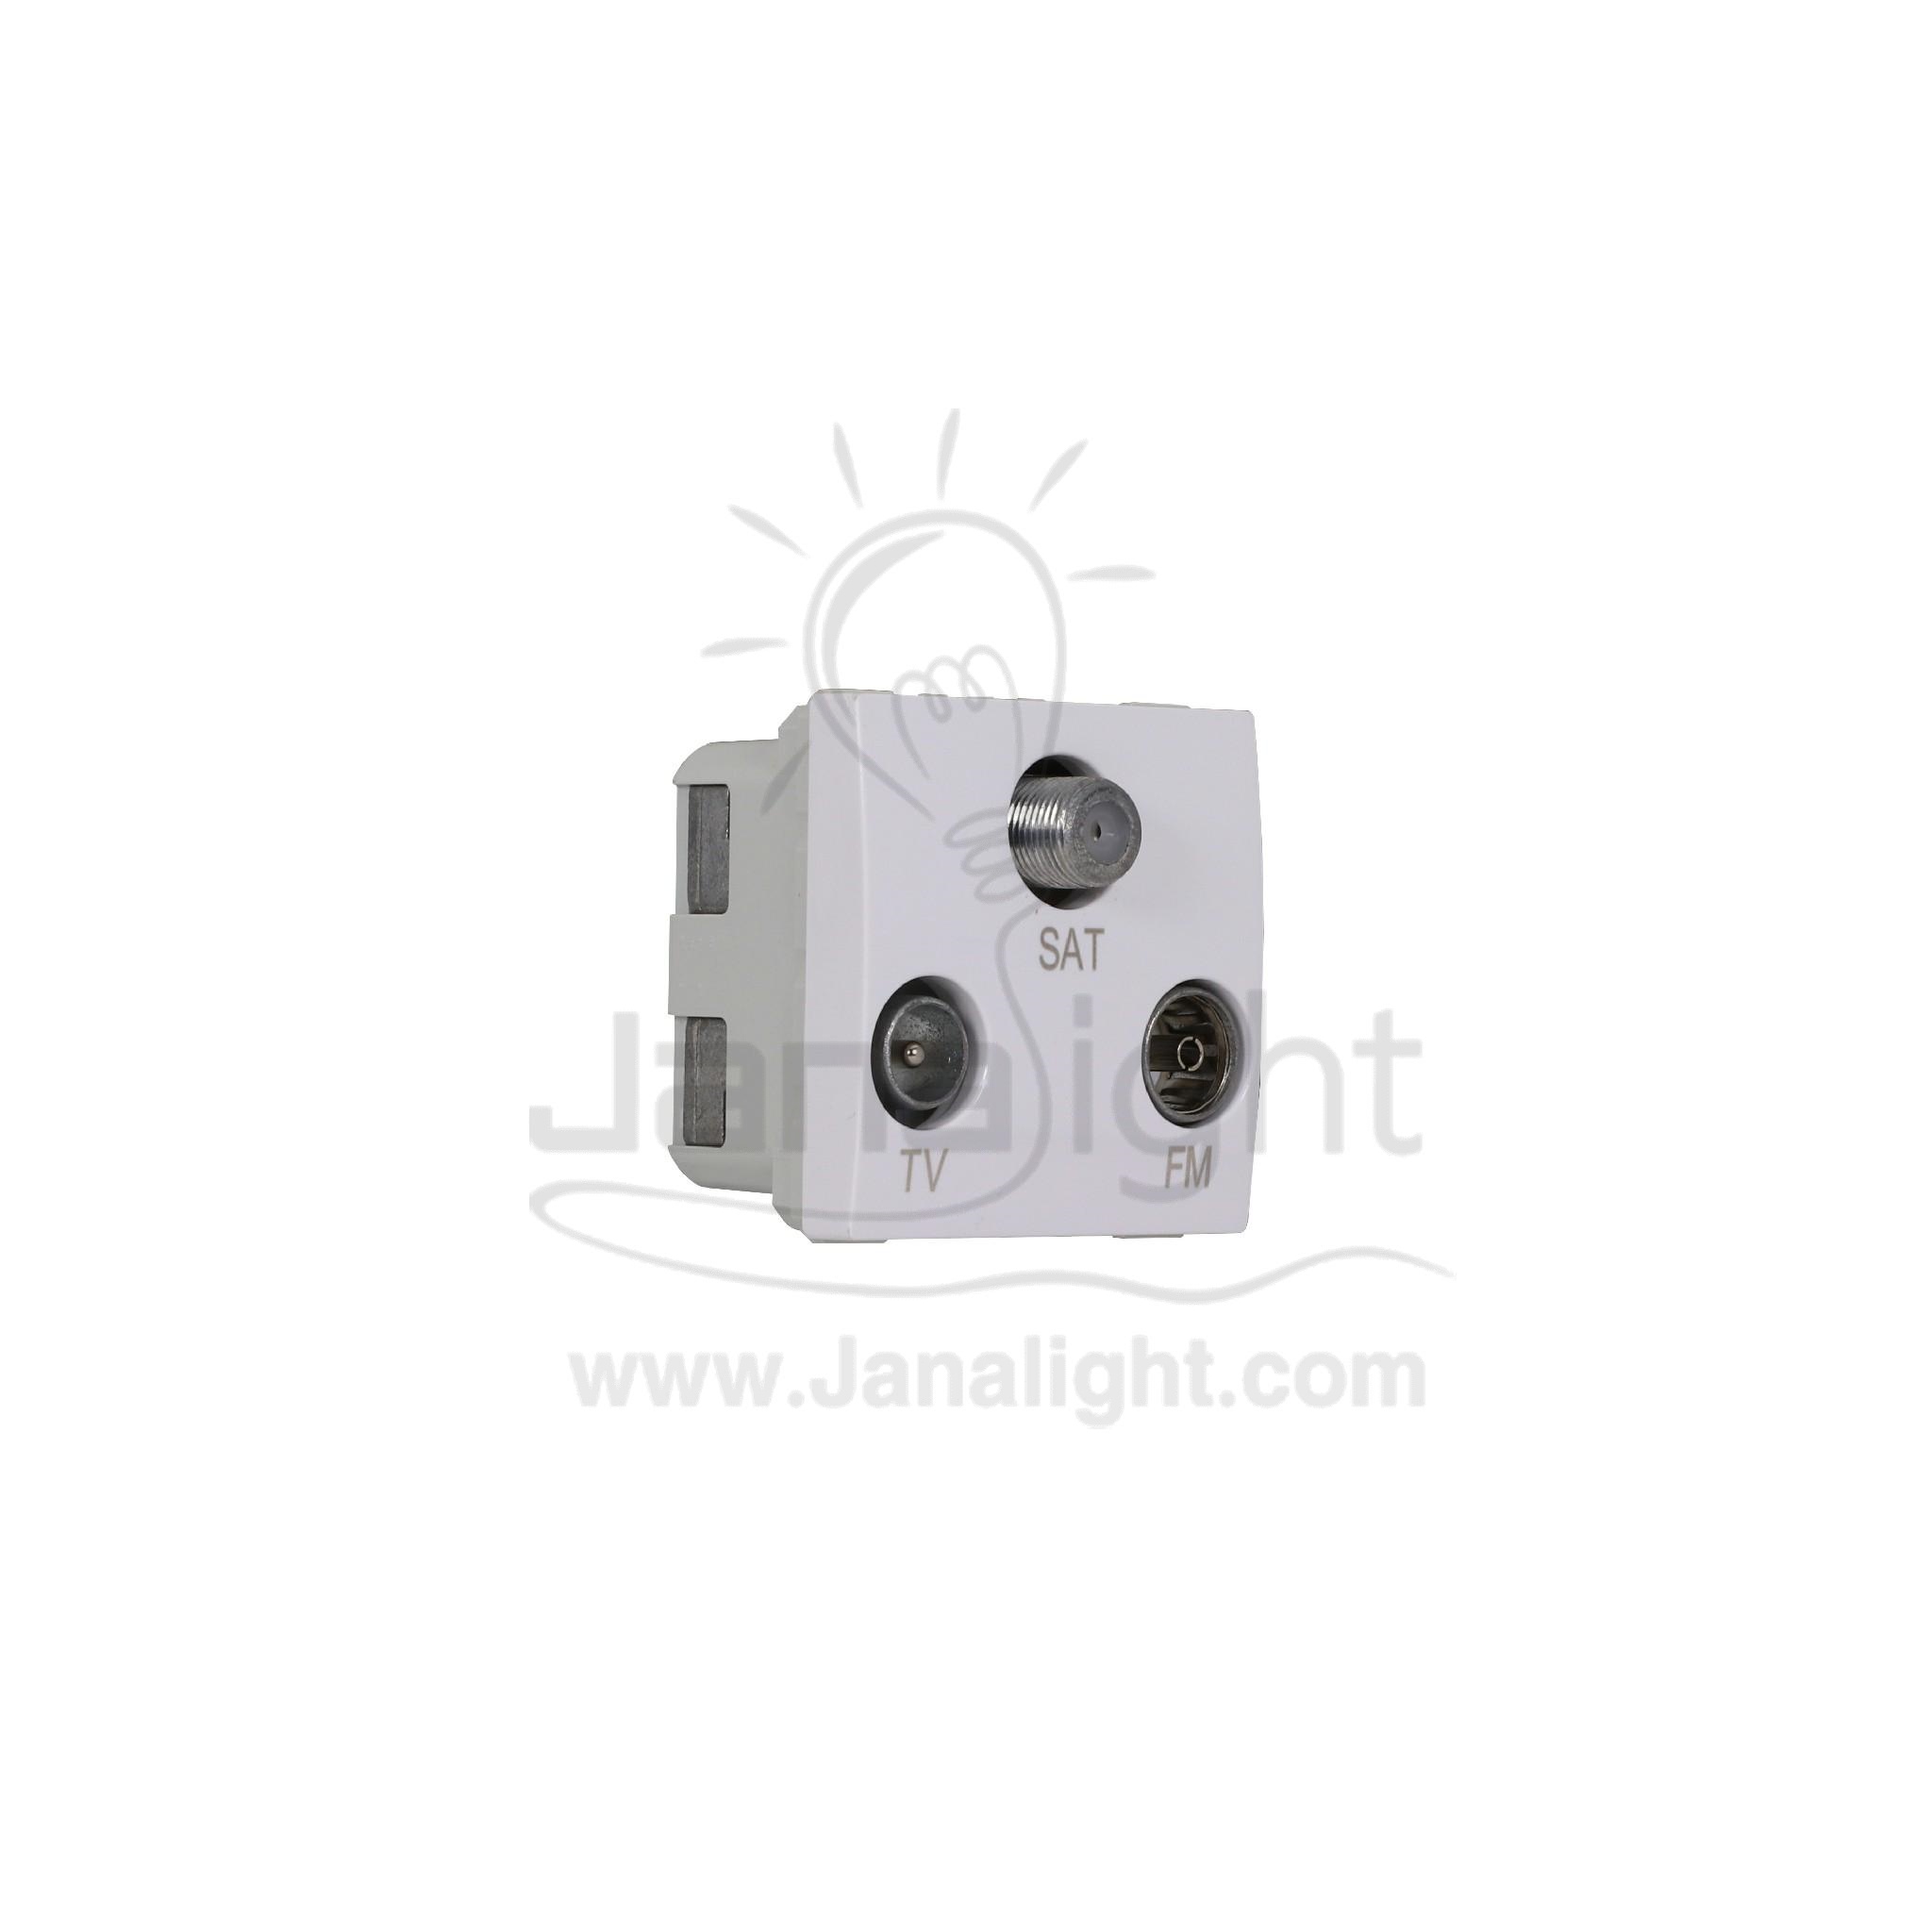 بريزة دش SAT و تلفزيون TV و راديو FM ابيض Schneider Mgu3.468.18 Receiver Plug Socket, White